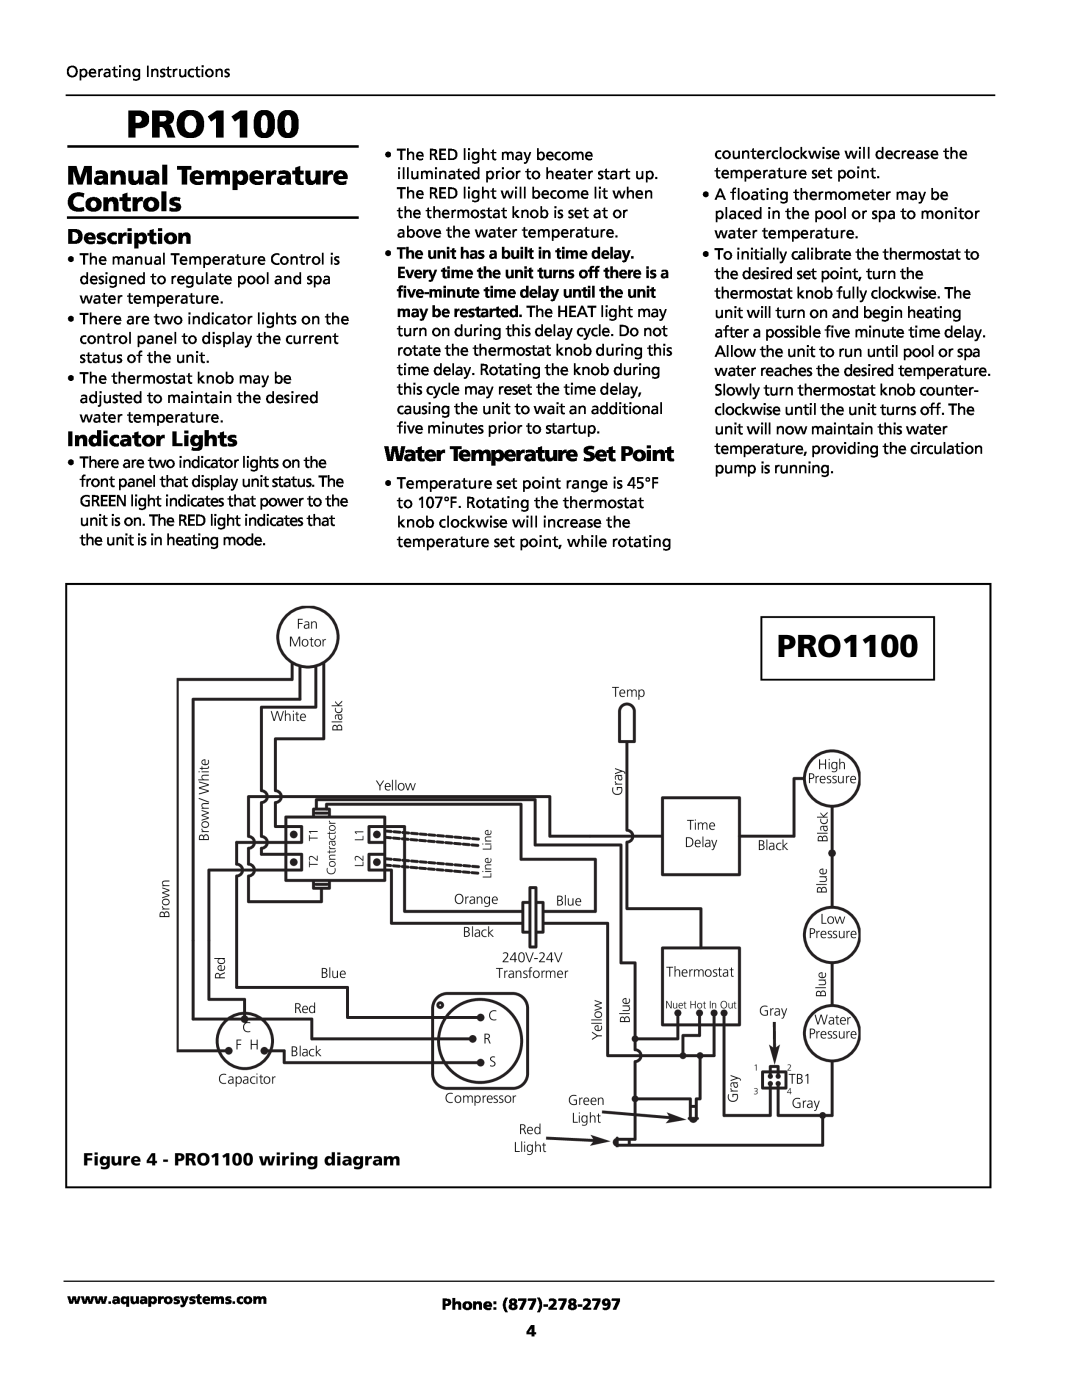 AquaPRO PRO1100e, PRO1300h/c Manual Temperature Controls, Description, Indicator Lights, PRO1100 wiring diagram, Phone 